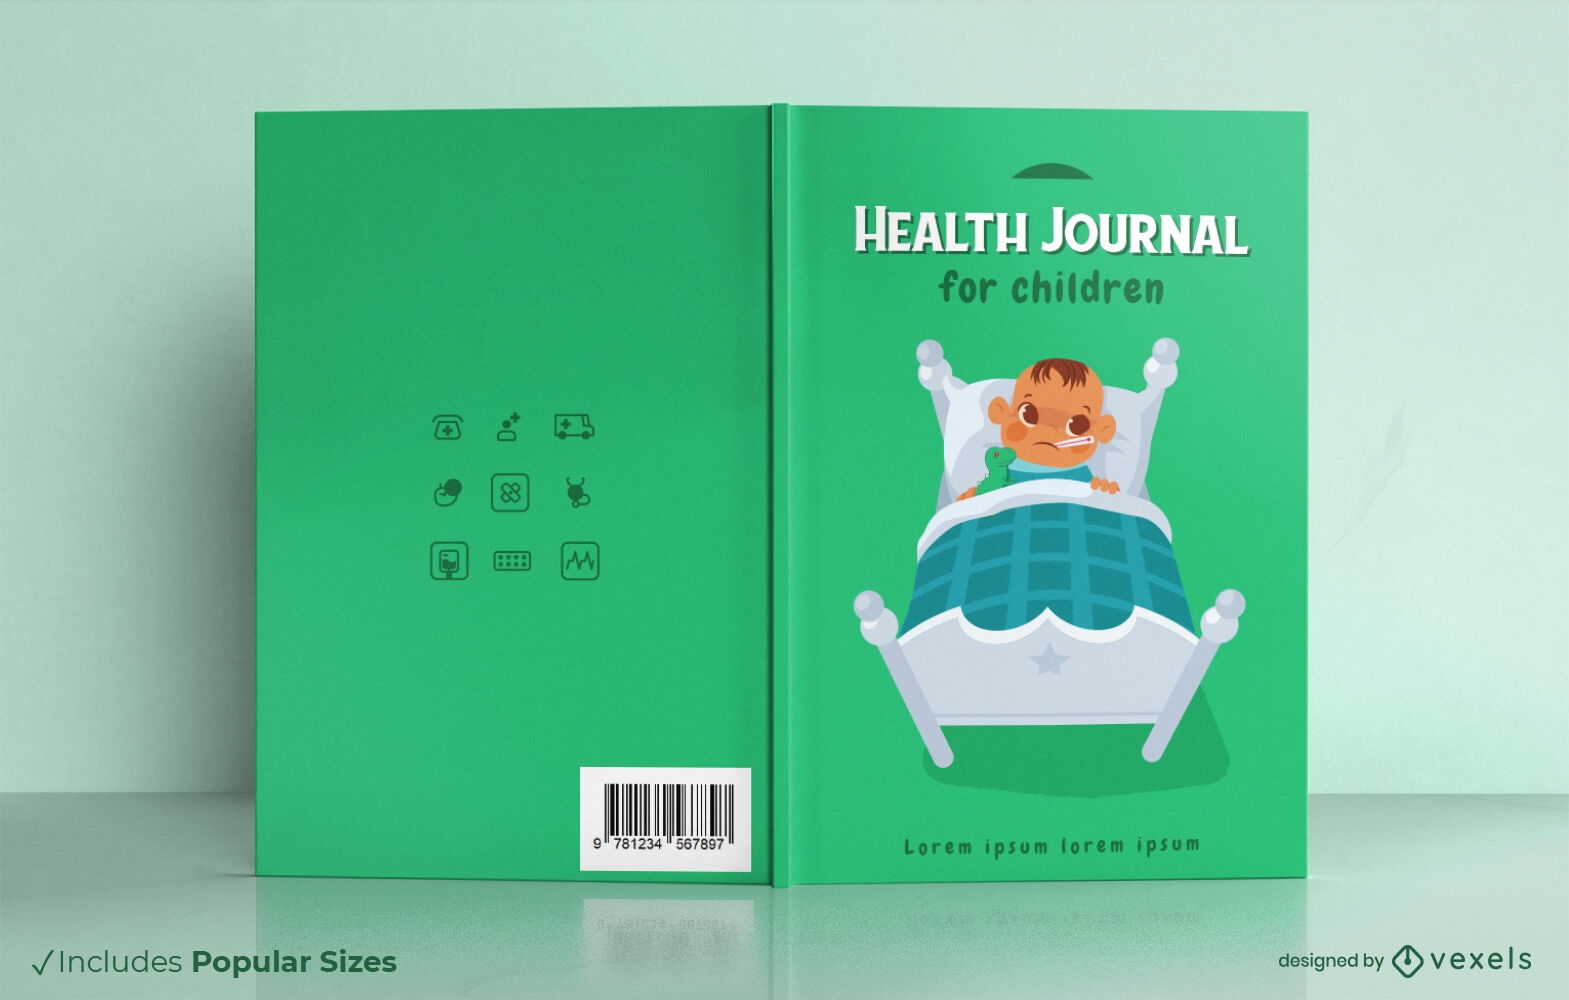 Descarga Vector De Diseño De Portada De Libro De Revista De Salud Para  Niños.